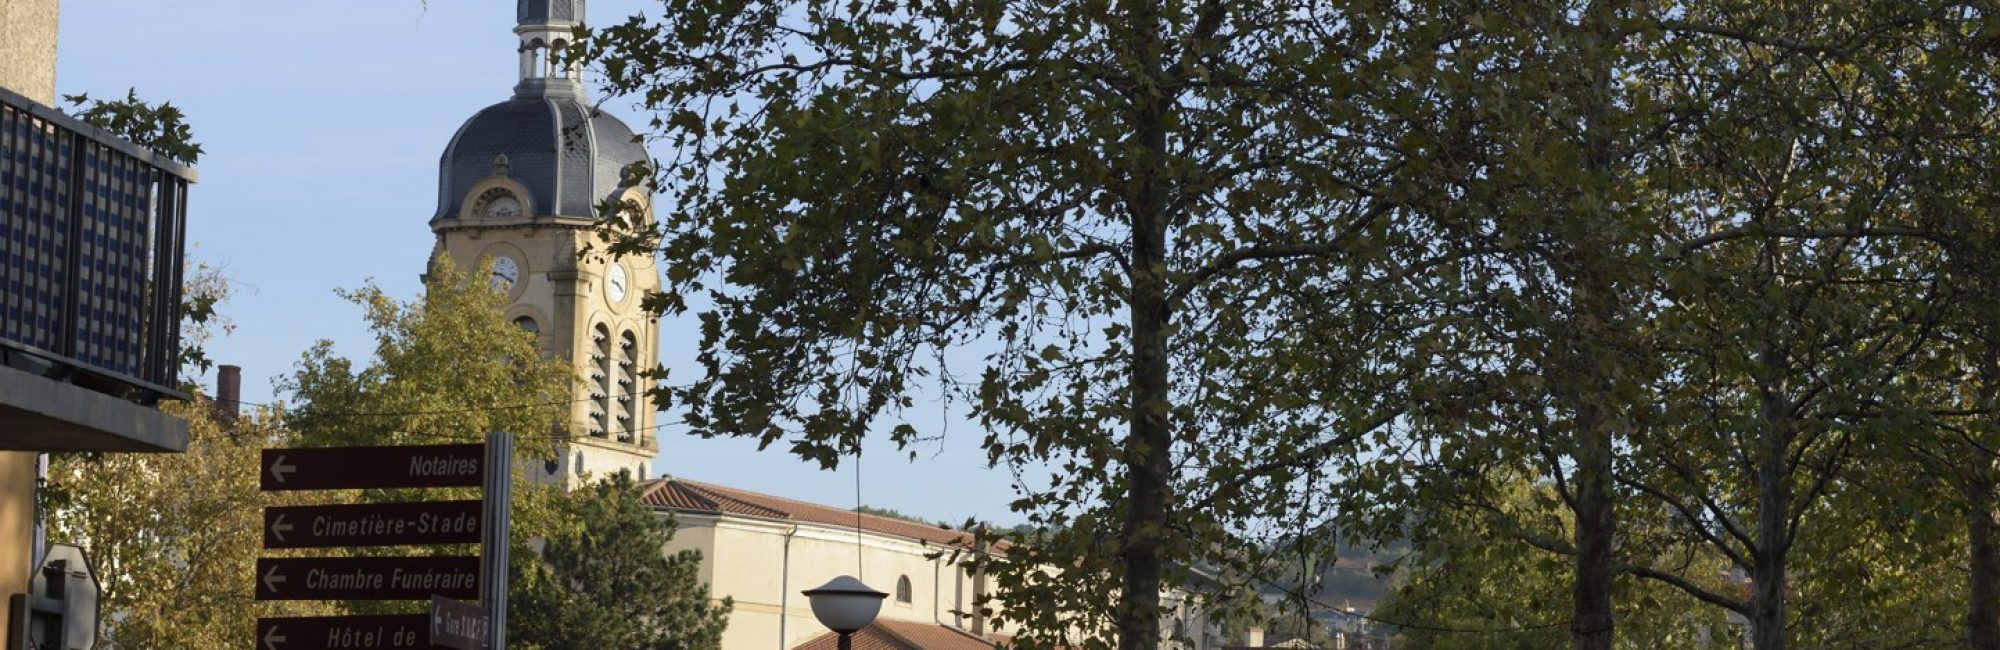 panneaux communaux péage de Roussillon